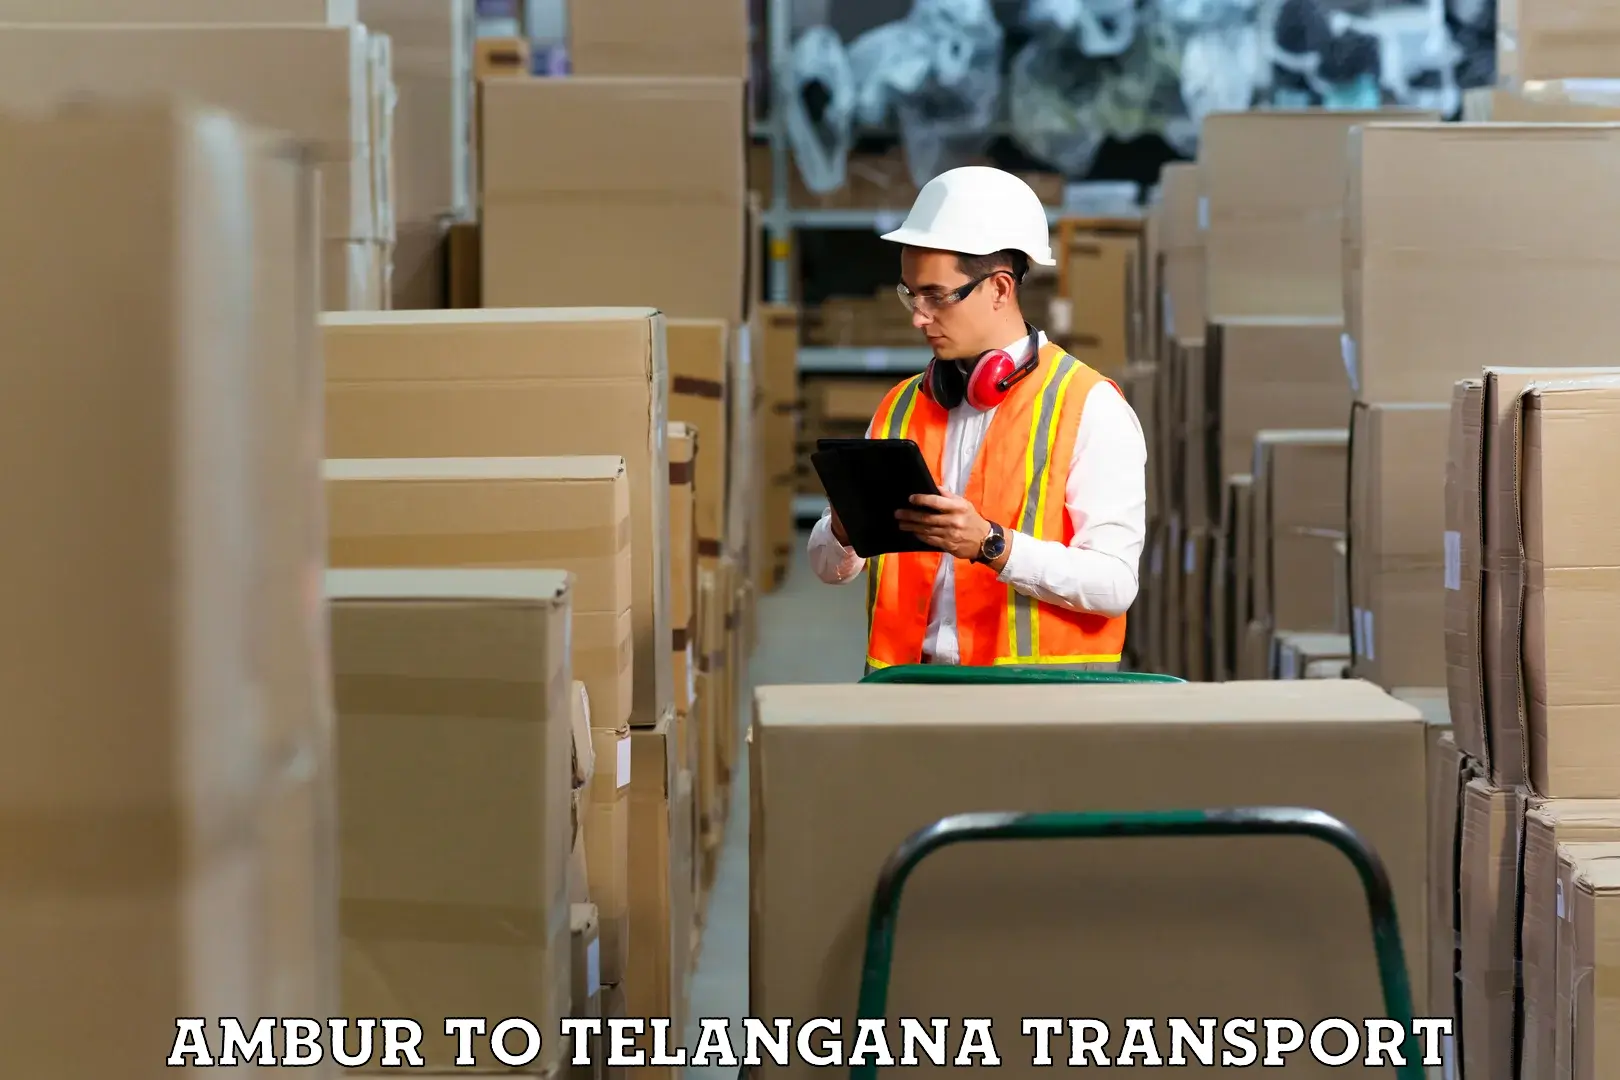 Container transport service Ambur to Rudrangi